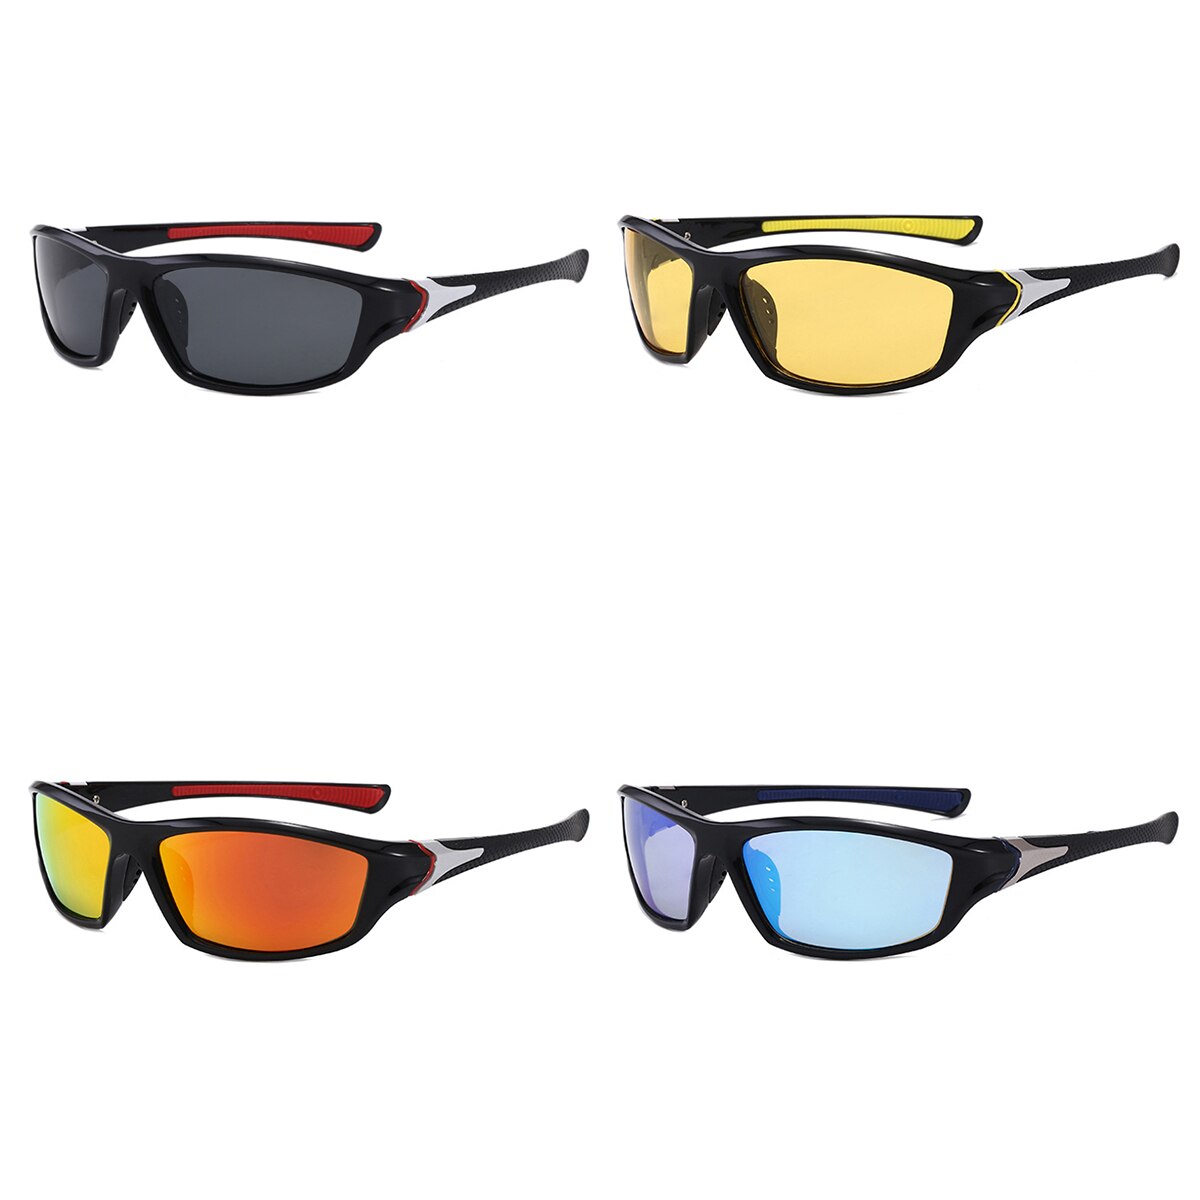 Mannen Outdoor Zonnebril Multicolor Wind-Proof Uv-bescherming Polariserende Bril Voor Rijden Rijden Vissen Klimmen